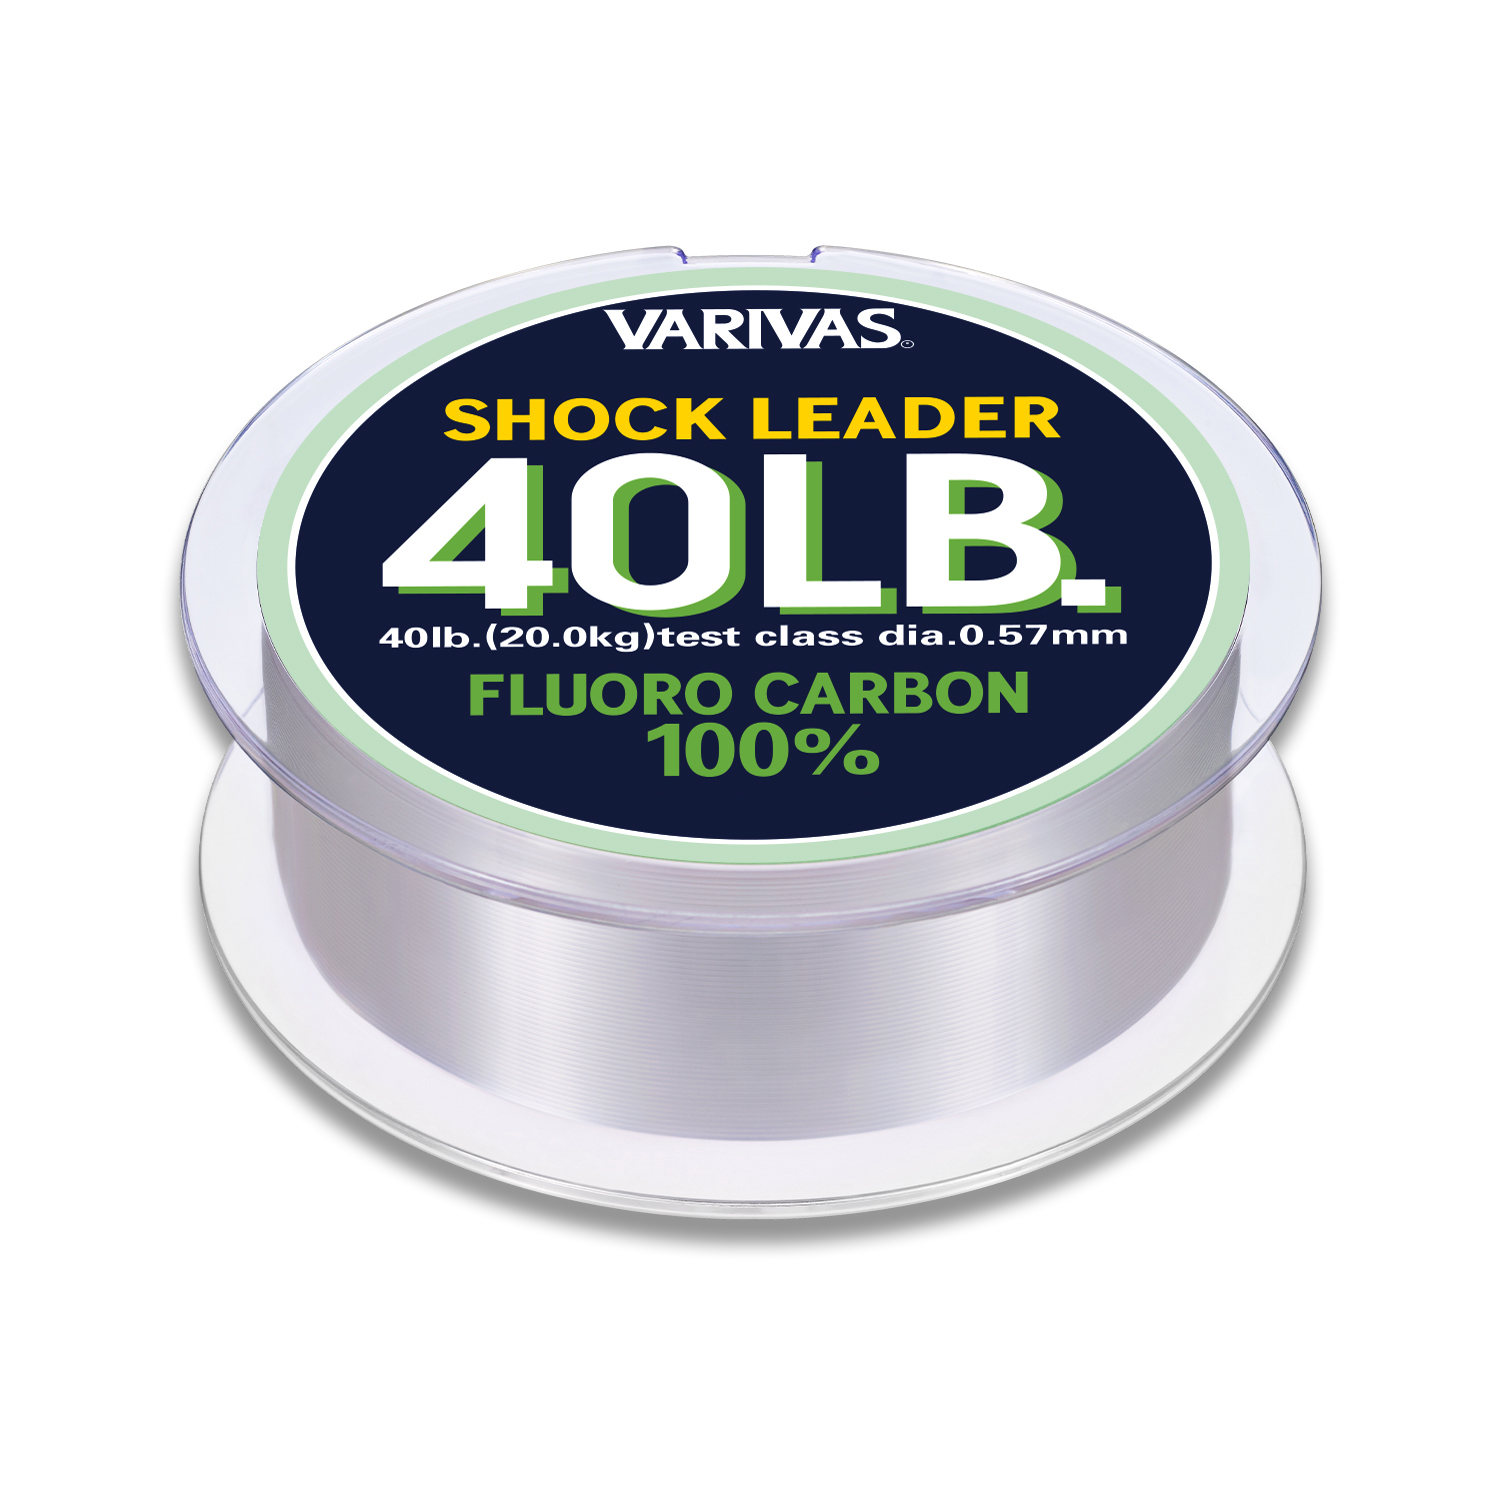 Filo Varivas Shock Leader Fluorocarbon 100%   filo-varivas-shock-leader-fluorocarbon-100